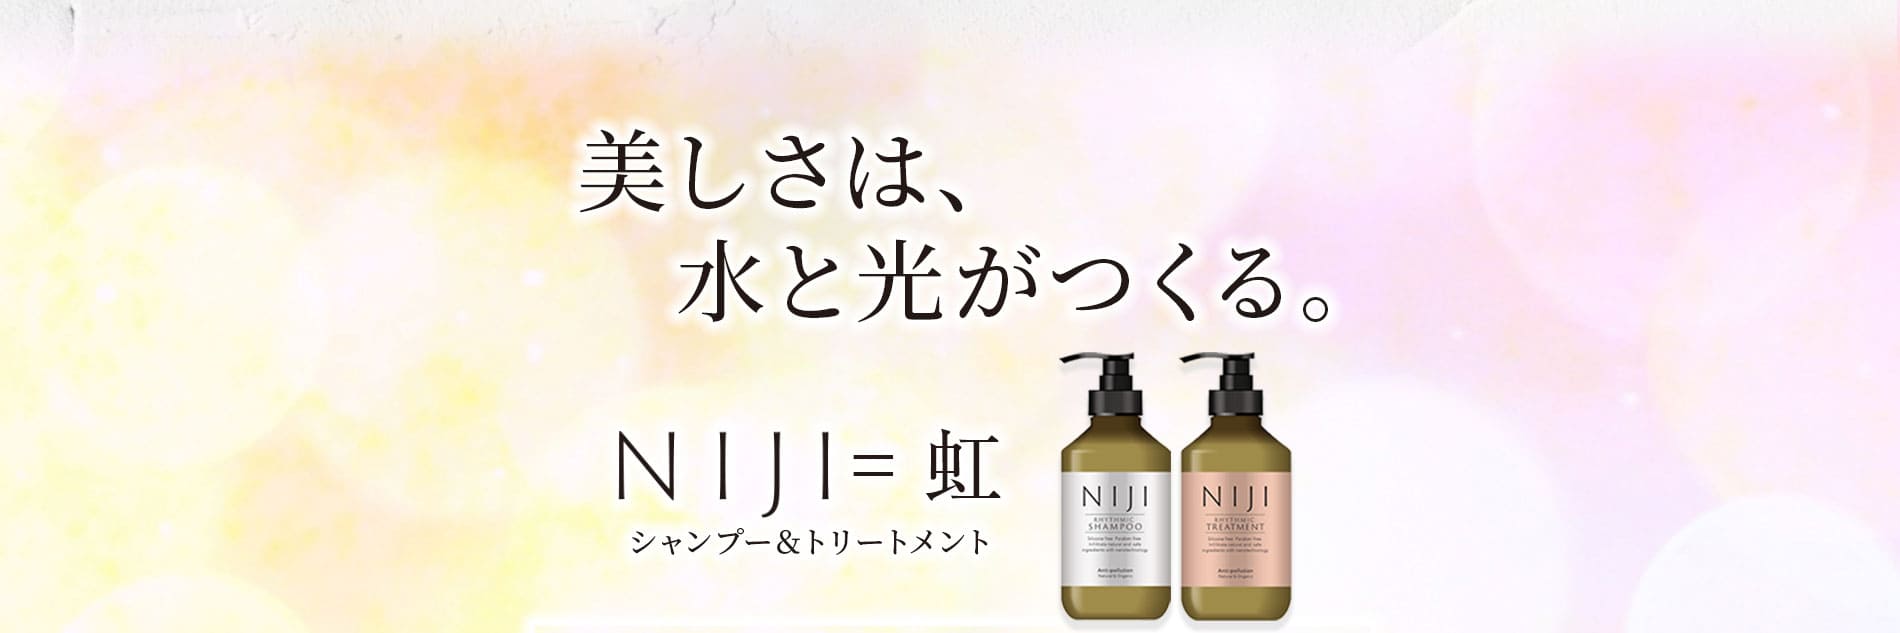 私たちの思いこのシャンプー&トリートメントを使った方の髪が光を纏い、優しい水分で潤うことをイメージしてこれらの商品に「NIJI」と名付けました。